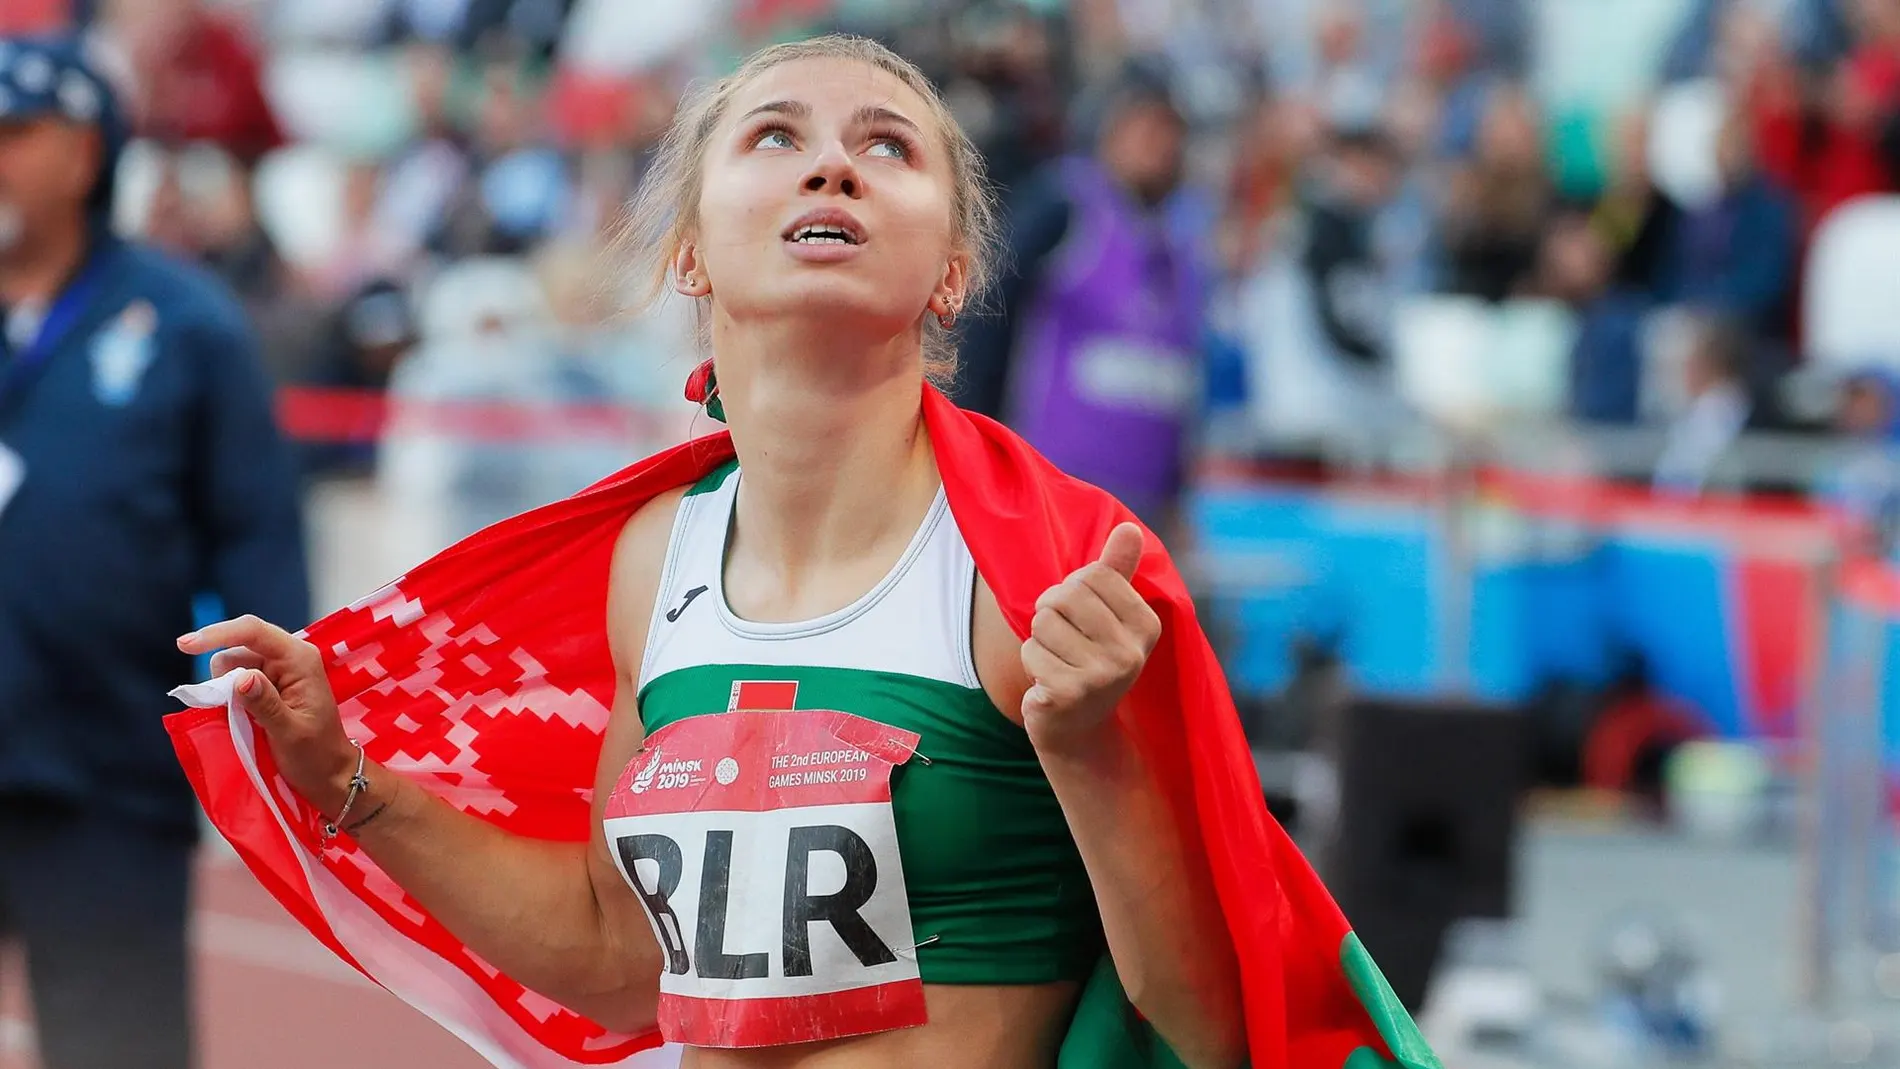 La atleta bielorrusa Tsimanouskaya pide asilo después de criticar a su país y que la obligaran a regresar